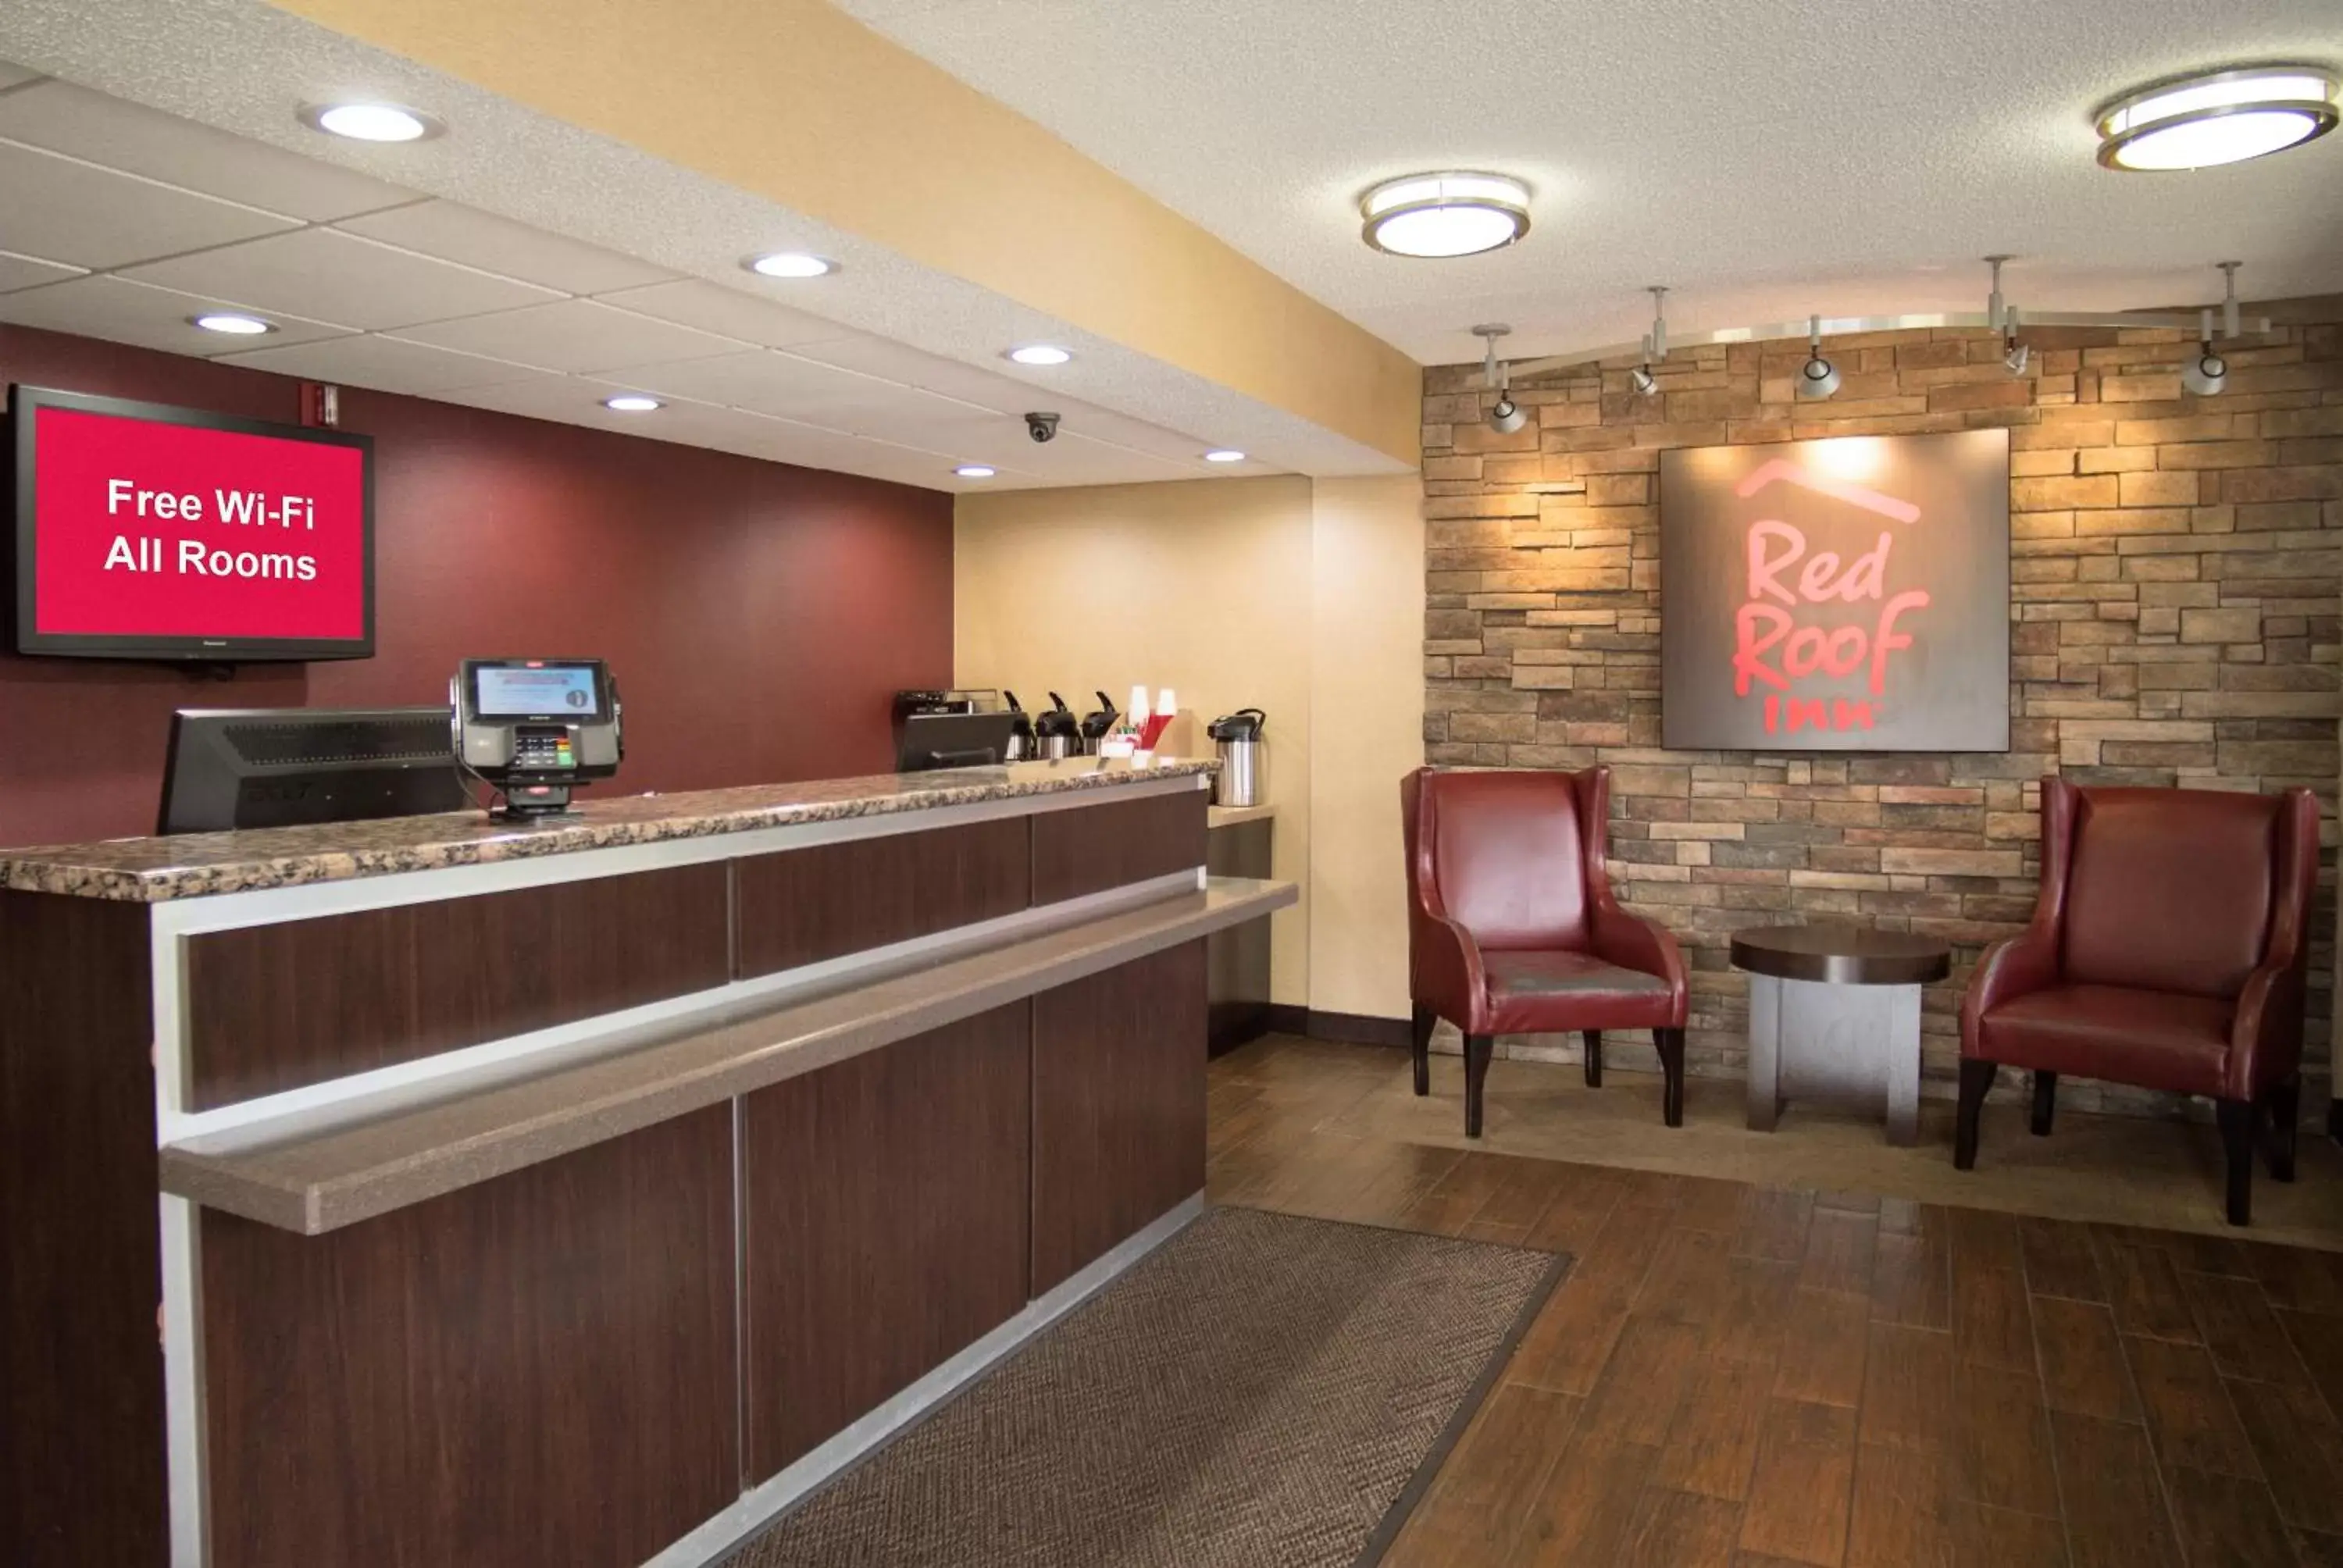 Lobby or reception, Lobby/Reception in Red Roof Inn Kalamazoo West - Western Michigan U